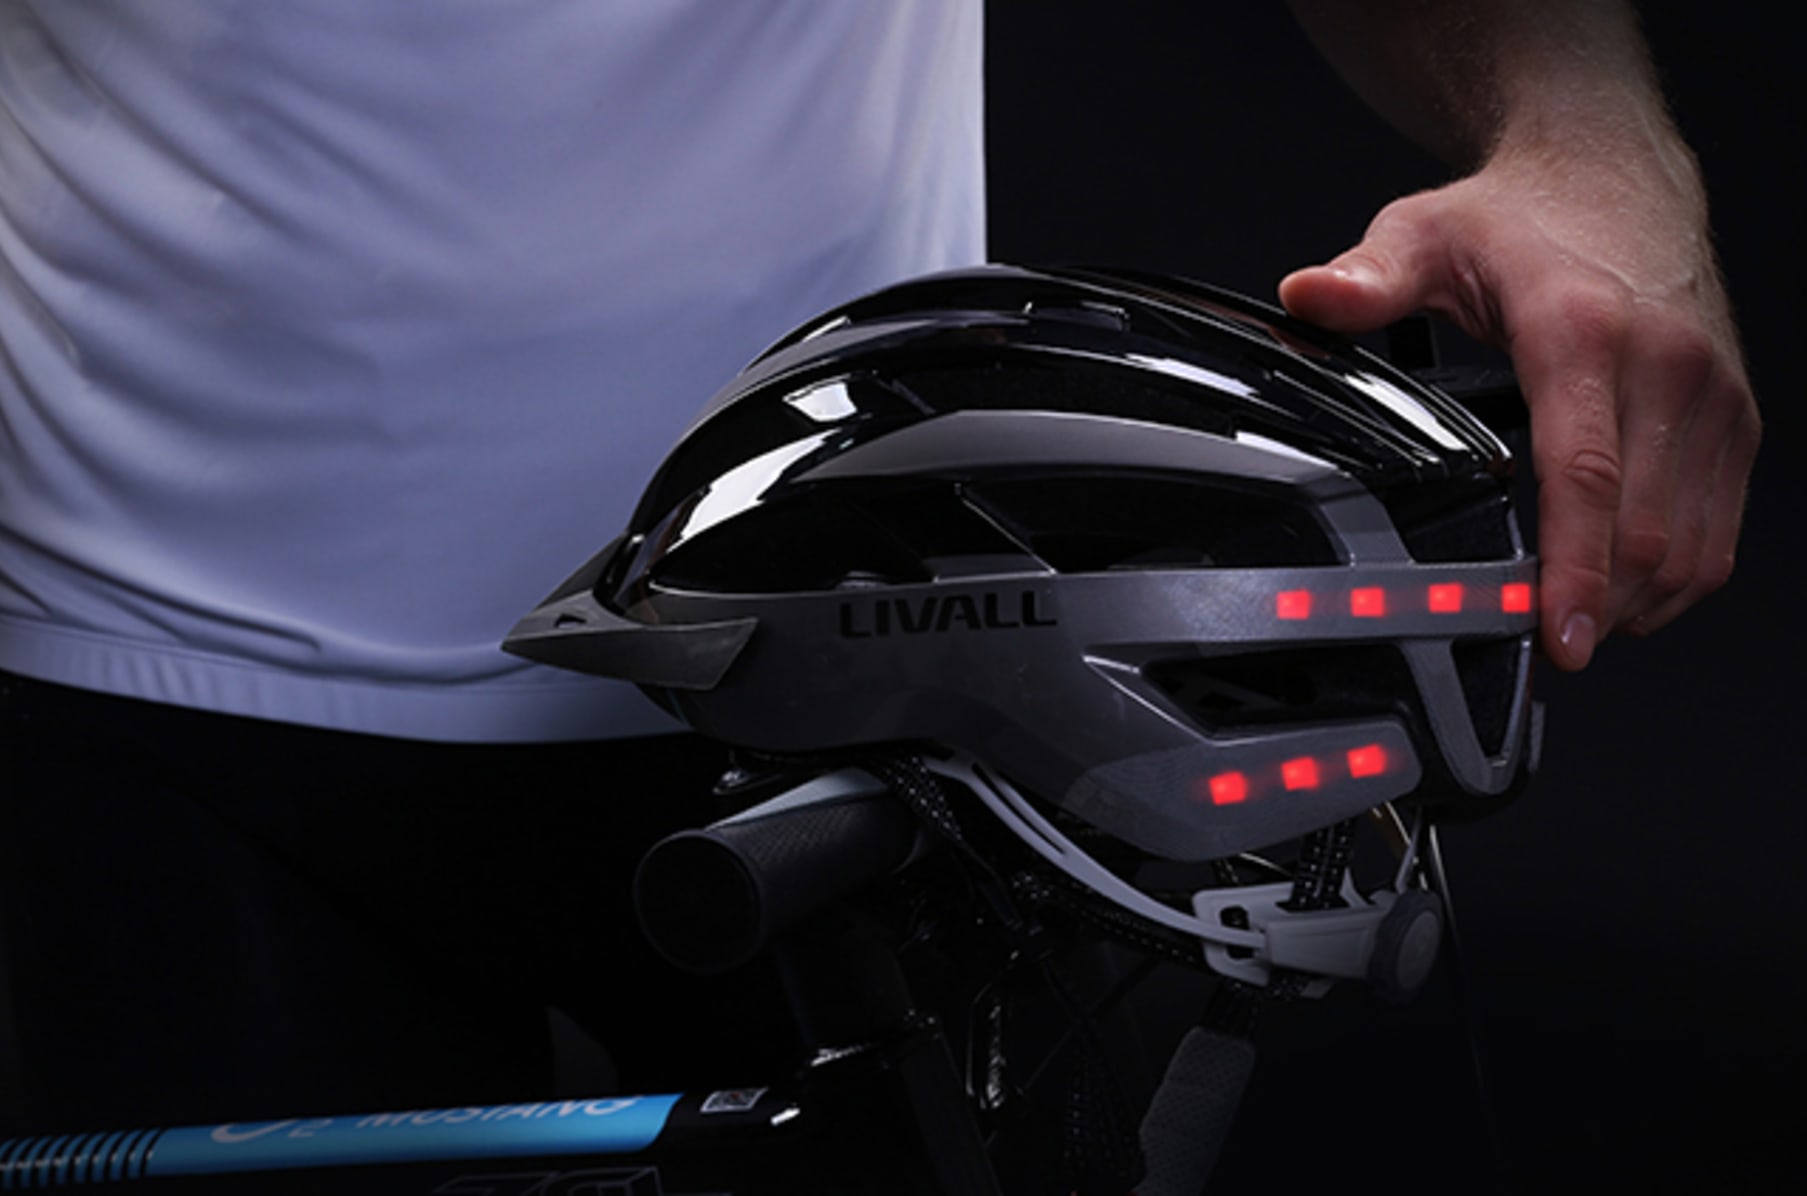 livall mt1 smart bike helmet